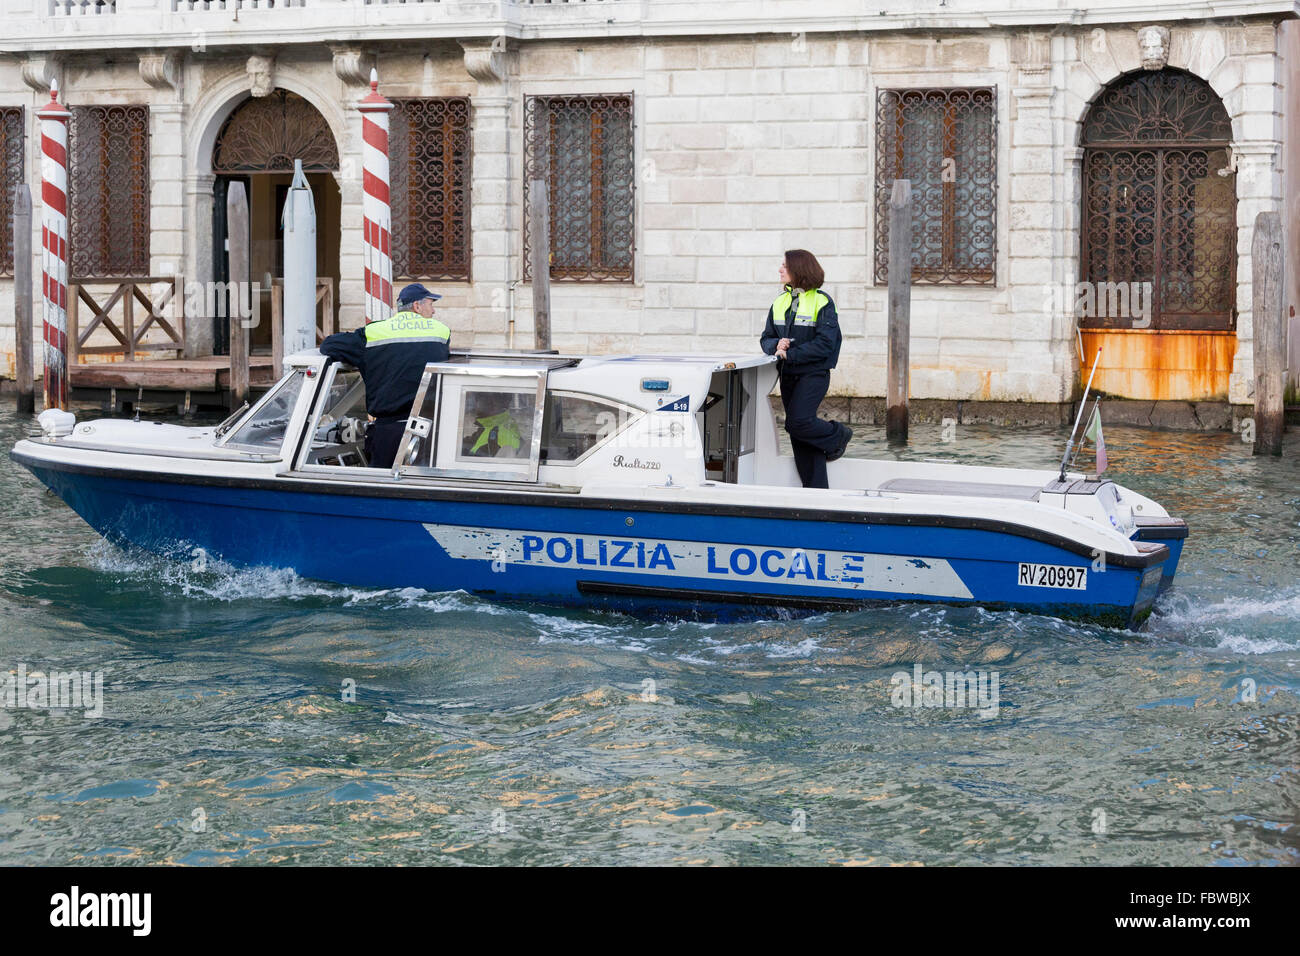 Police boat, Venice, Italy Stock Photo